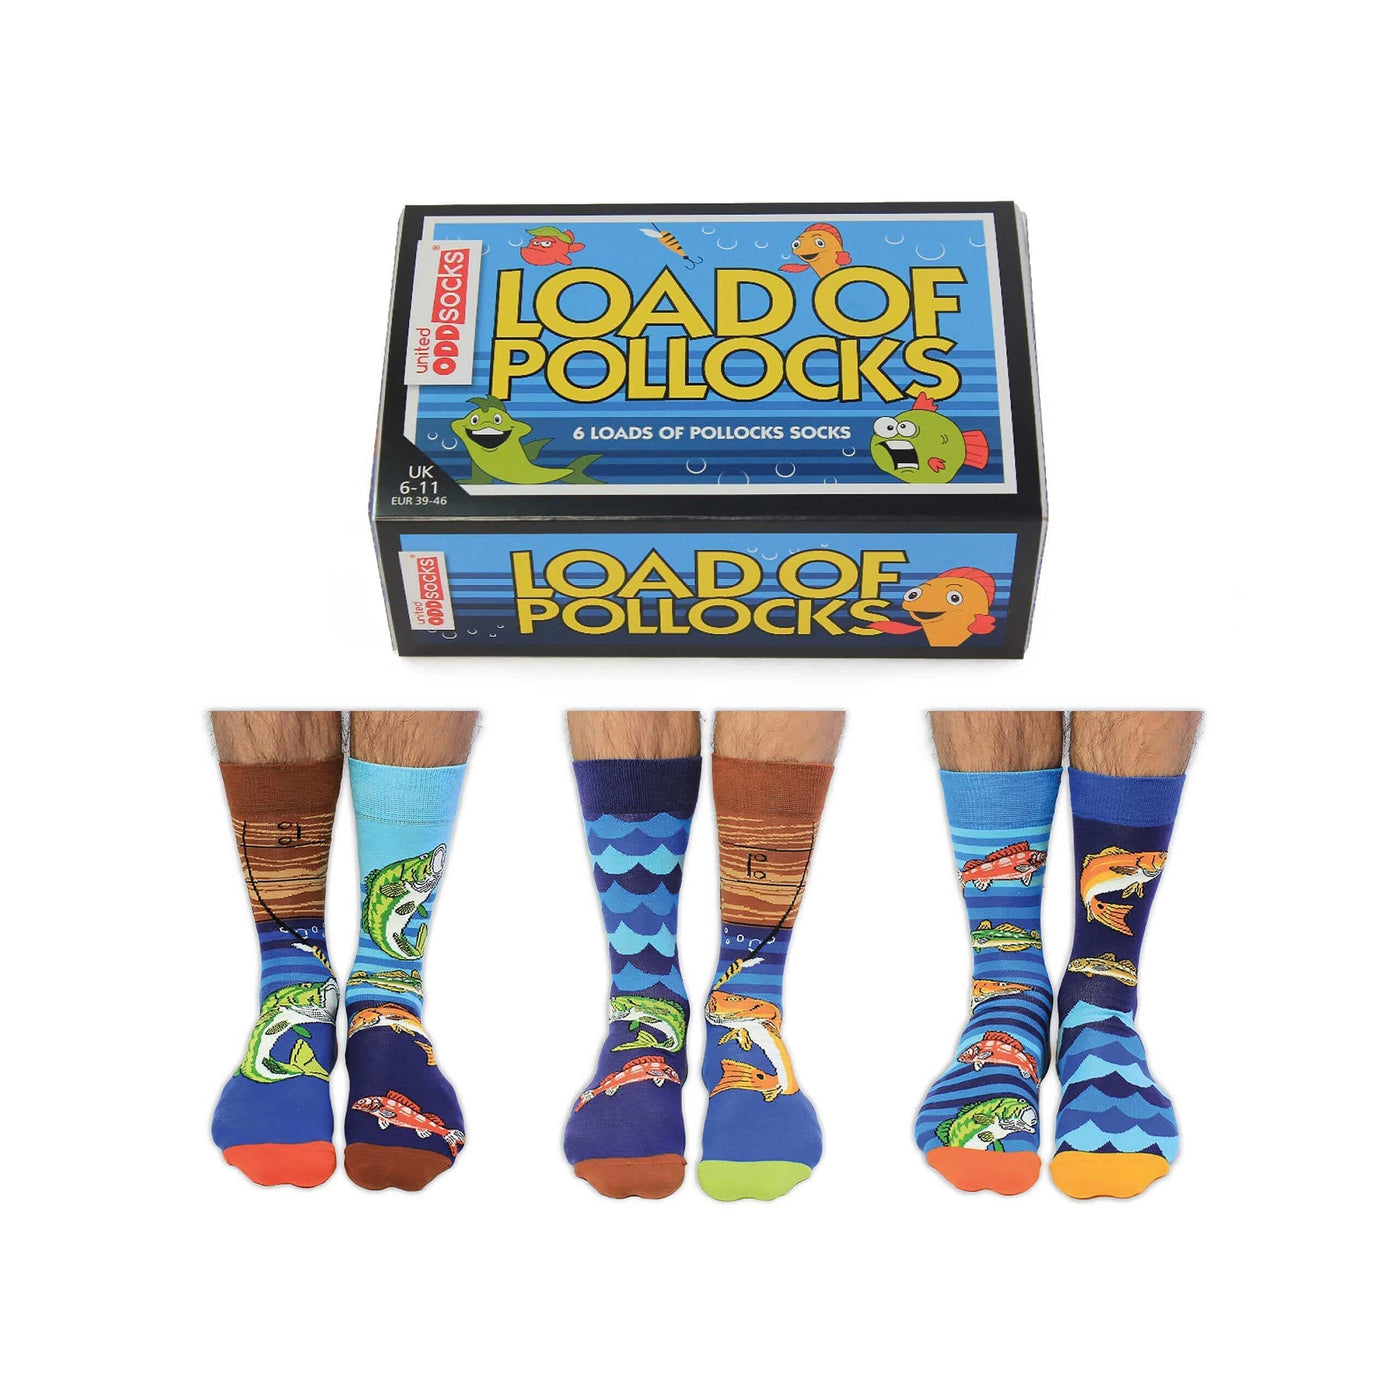 United Odd Socks Socks Load of Pollocks Fishing Men's Oddsocks - Size 6-11